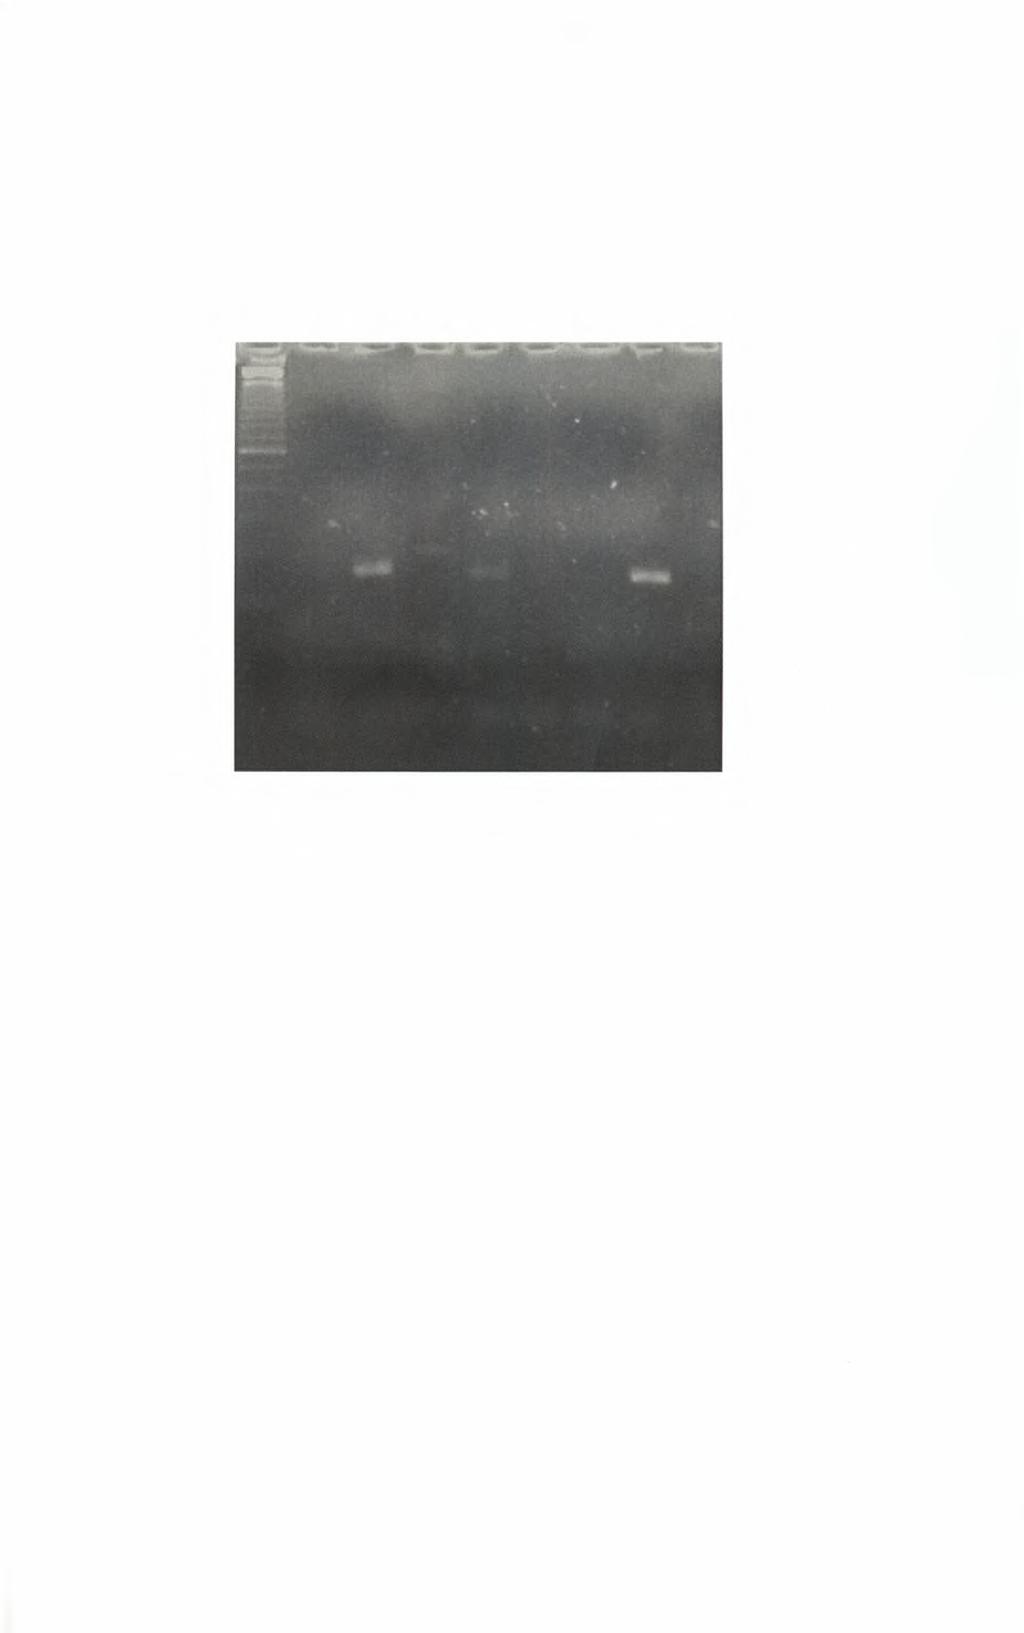 7.4 Αποτελέσματα Nested Multiplex PCR με το τρίτο μείγμα εκκινητικών μορίων. Σύμφωνα με την εικόνα 7.